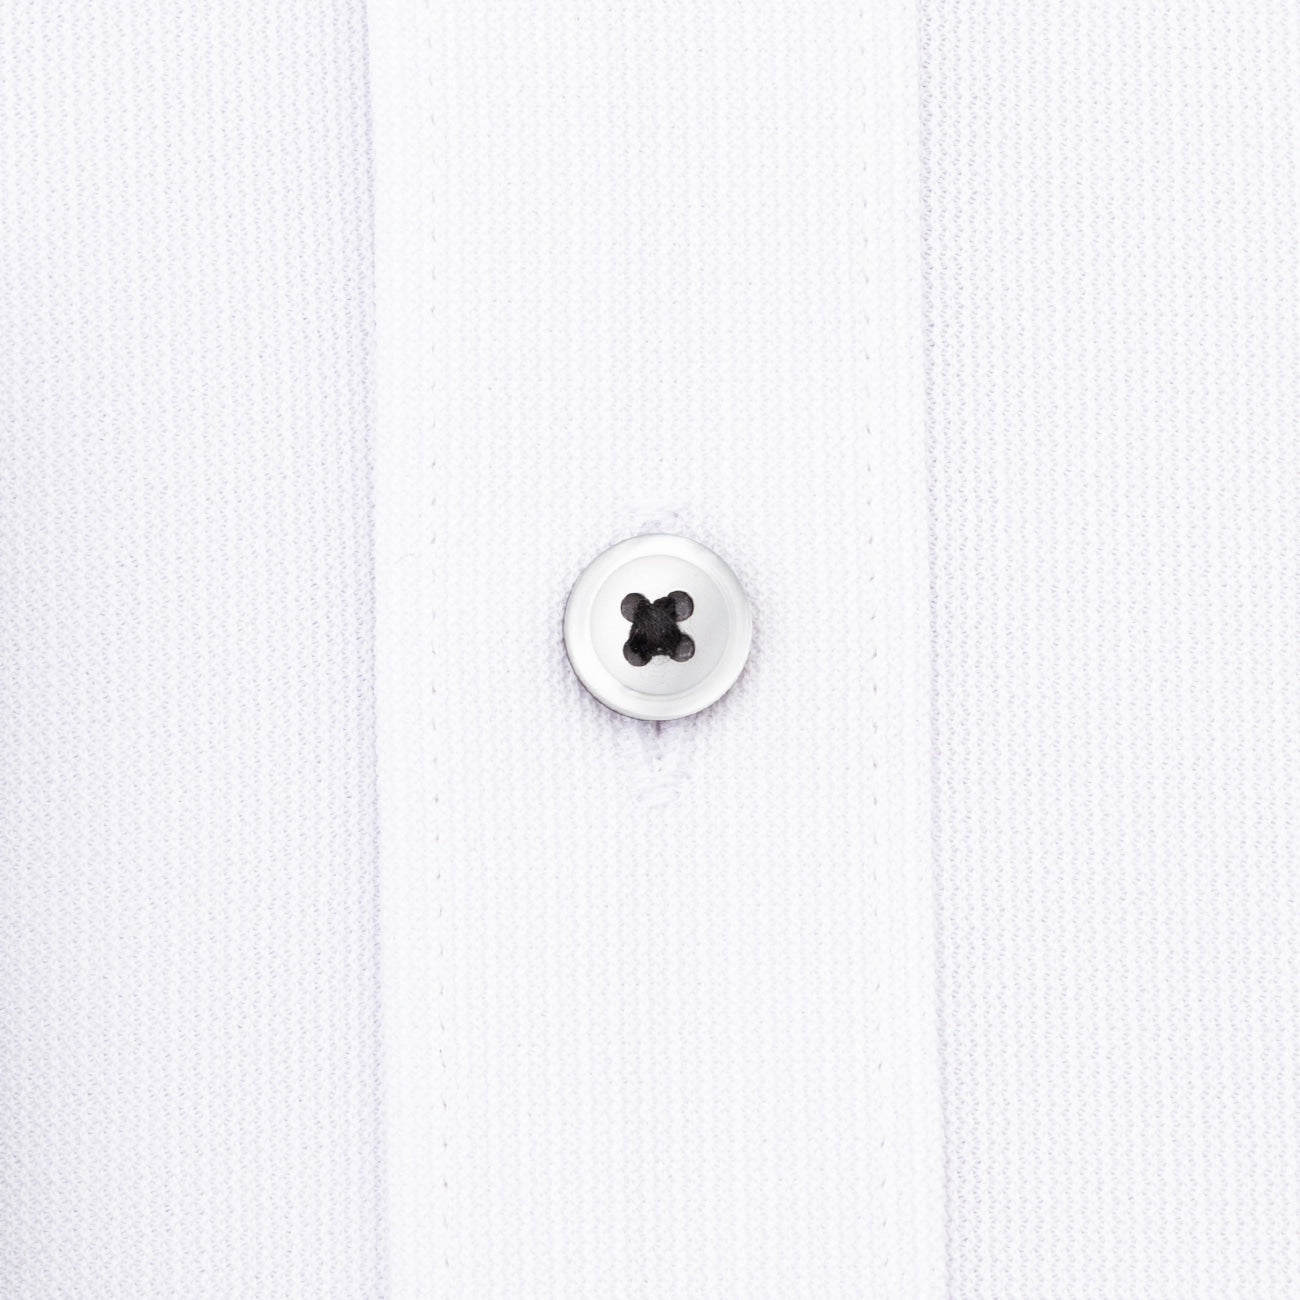 Aircool Non-iron Button-down Shirt